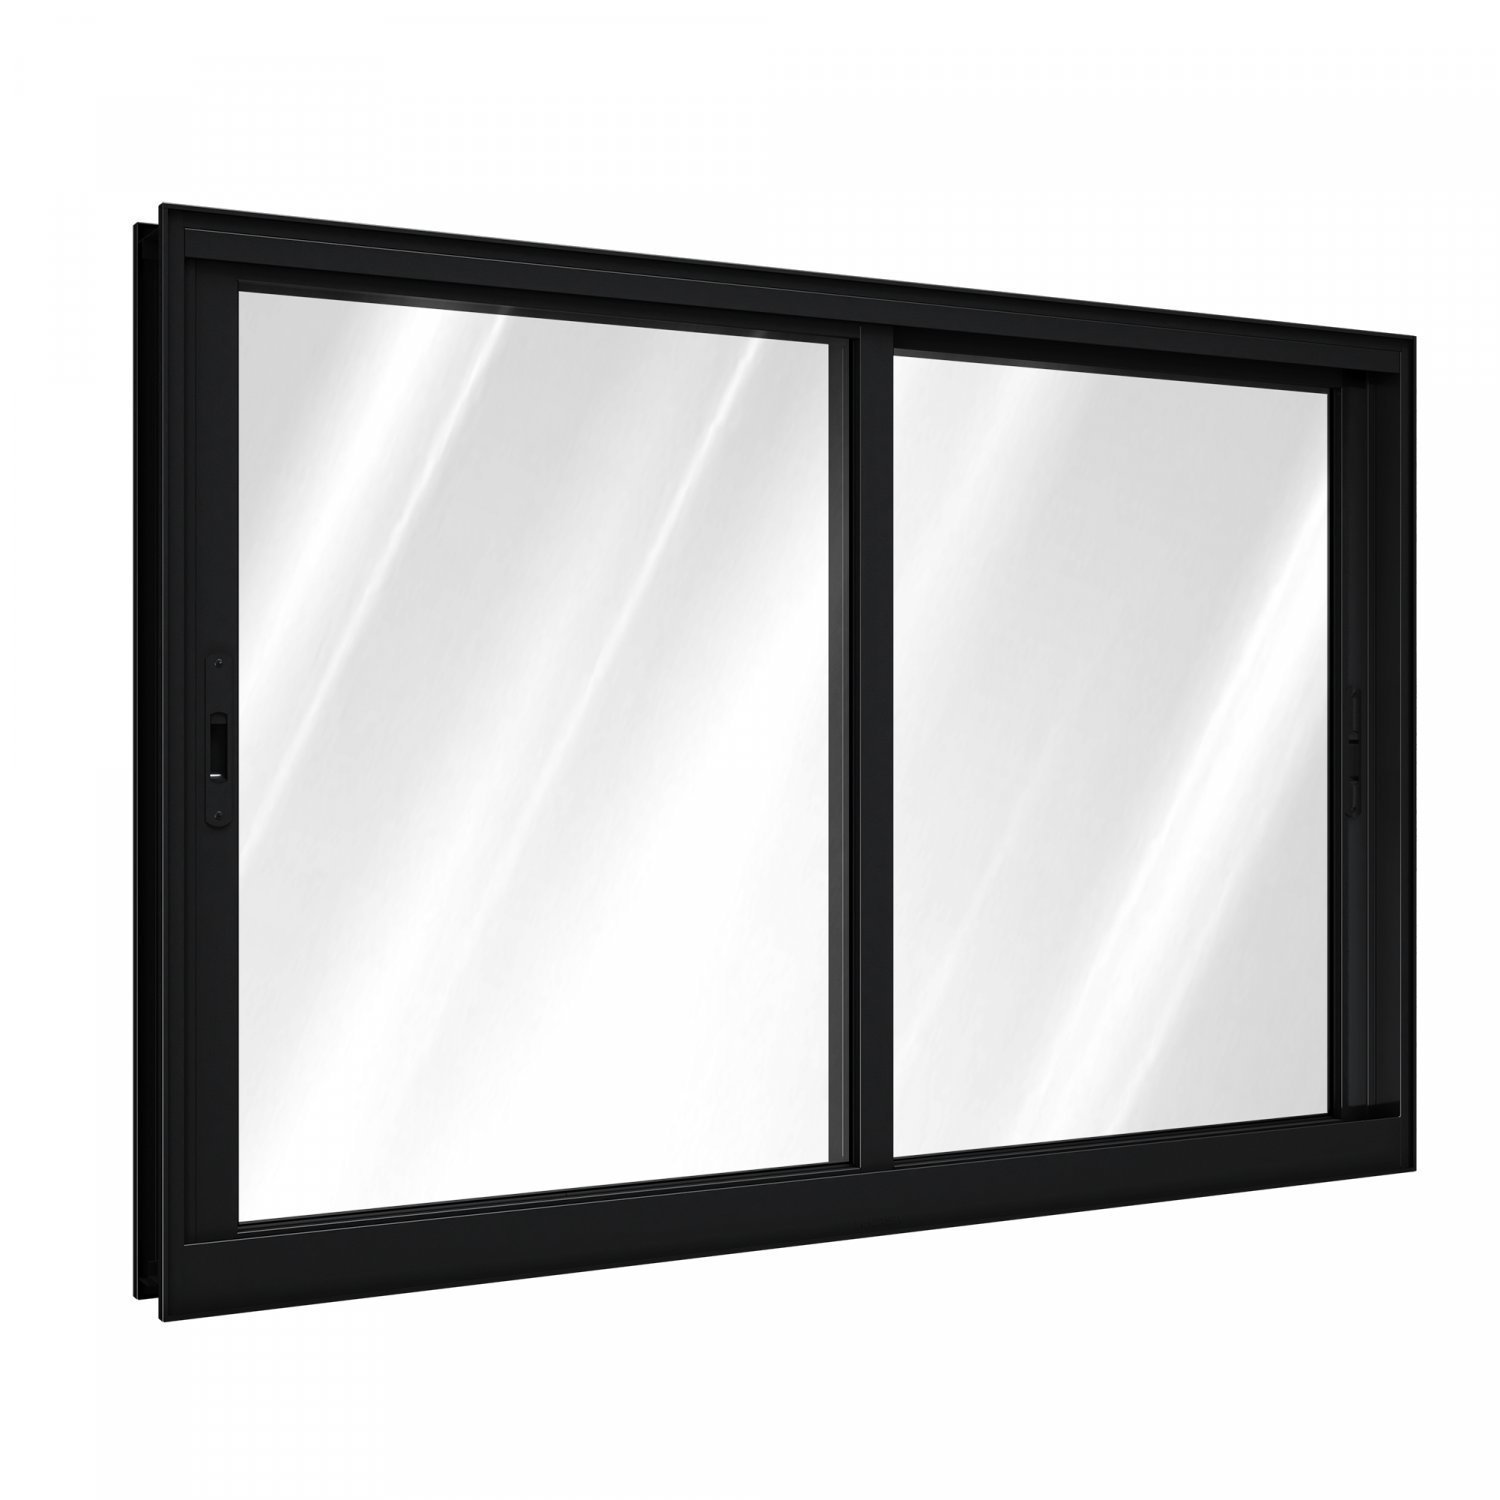 Janela de Correr Aluminio 2 Folhas com Vidro Abertura Lateral 100cmx120cm Lucasa 